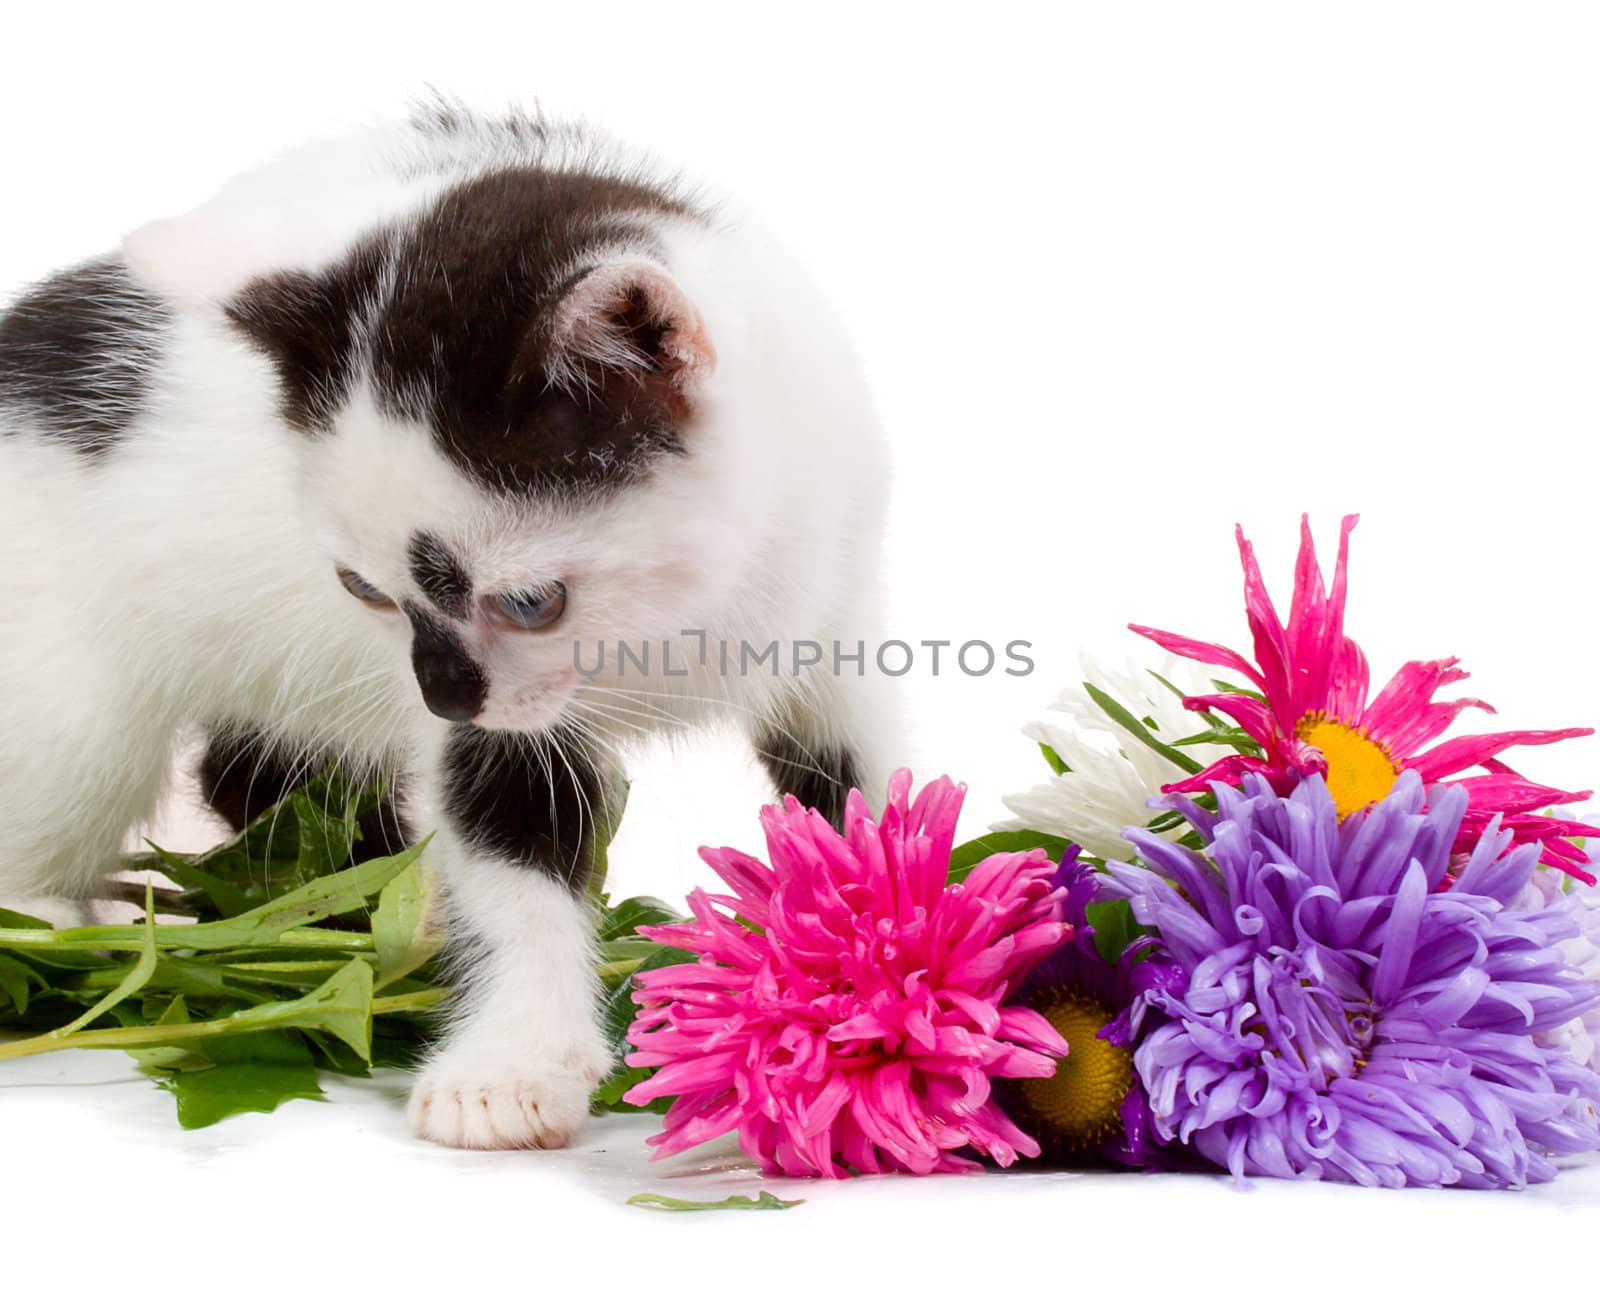 kitten taking aster flowers, isolated on white